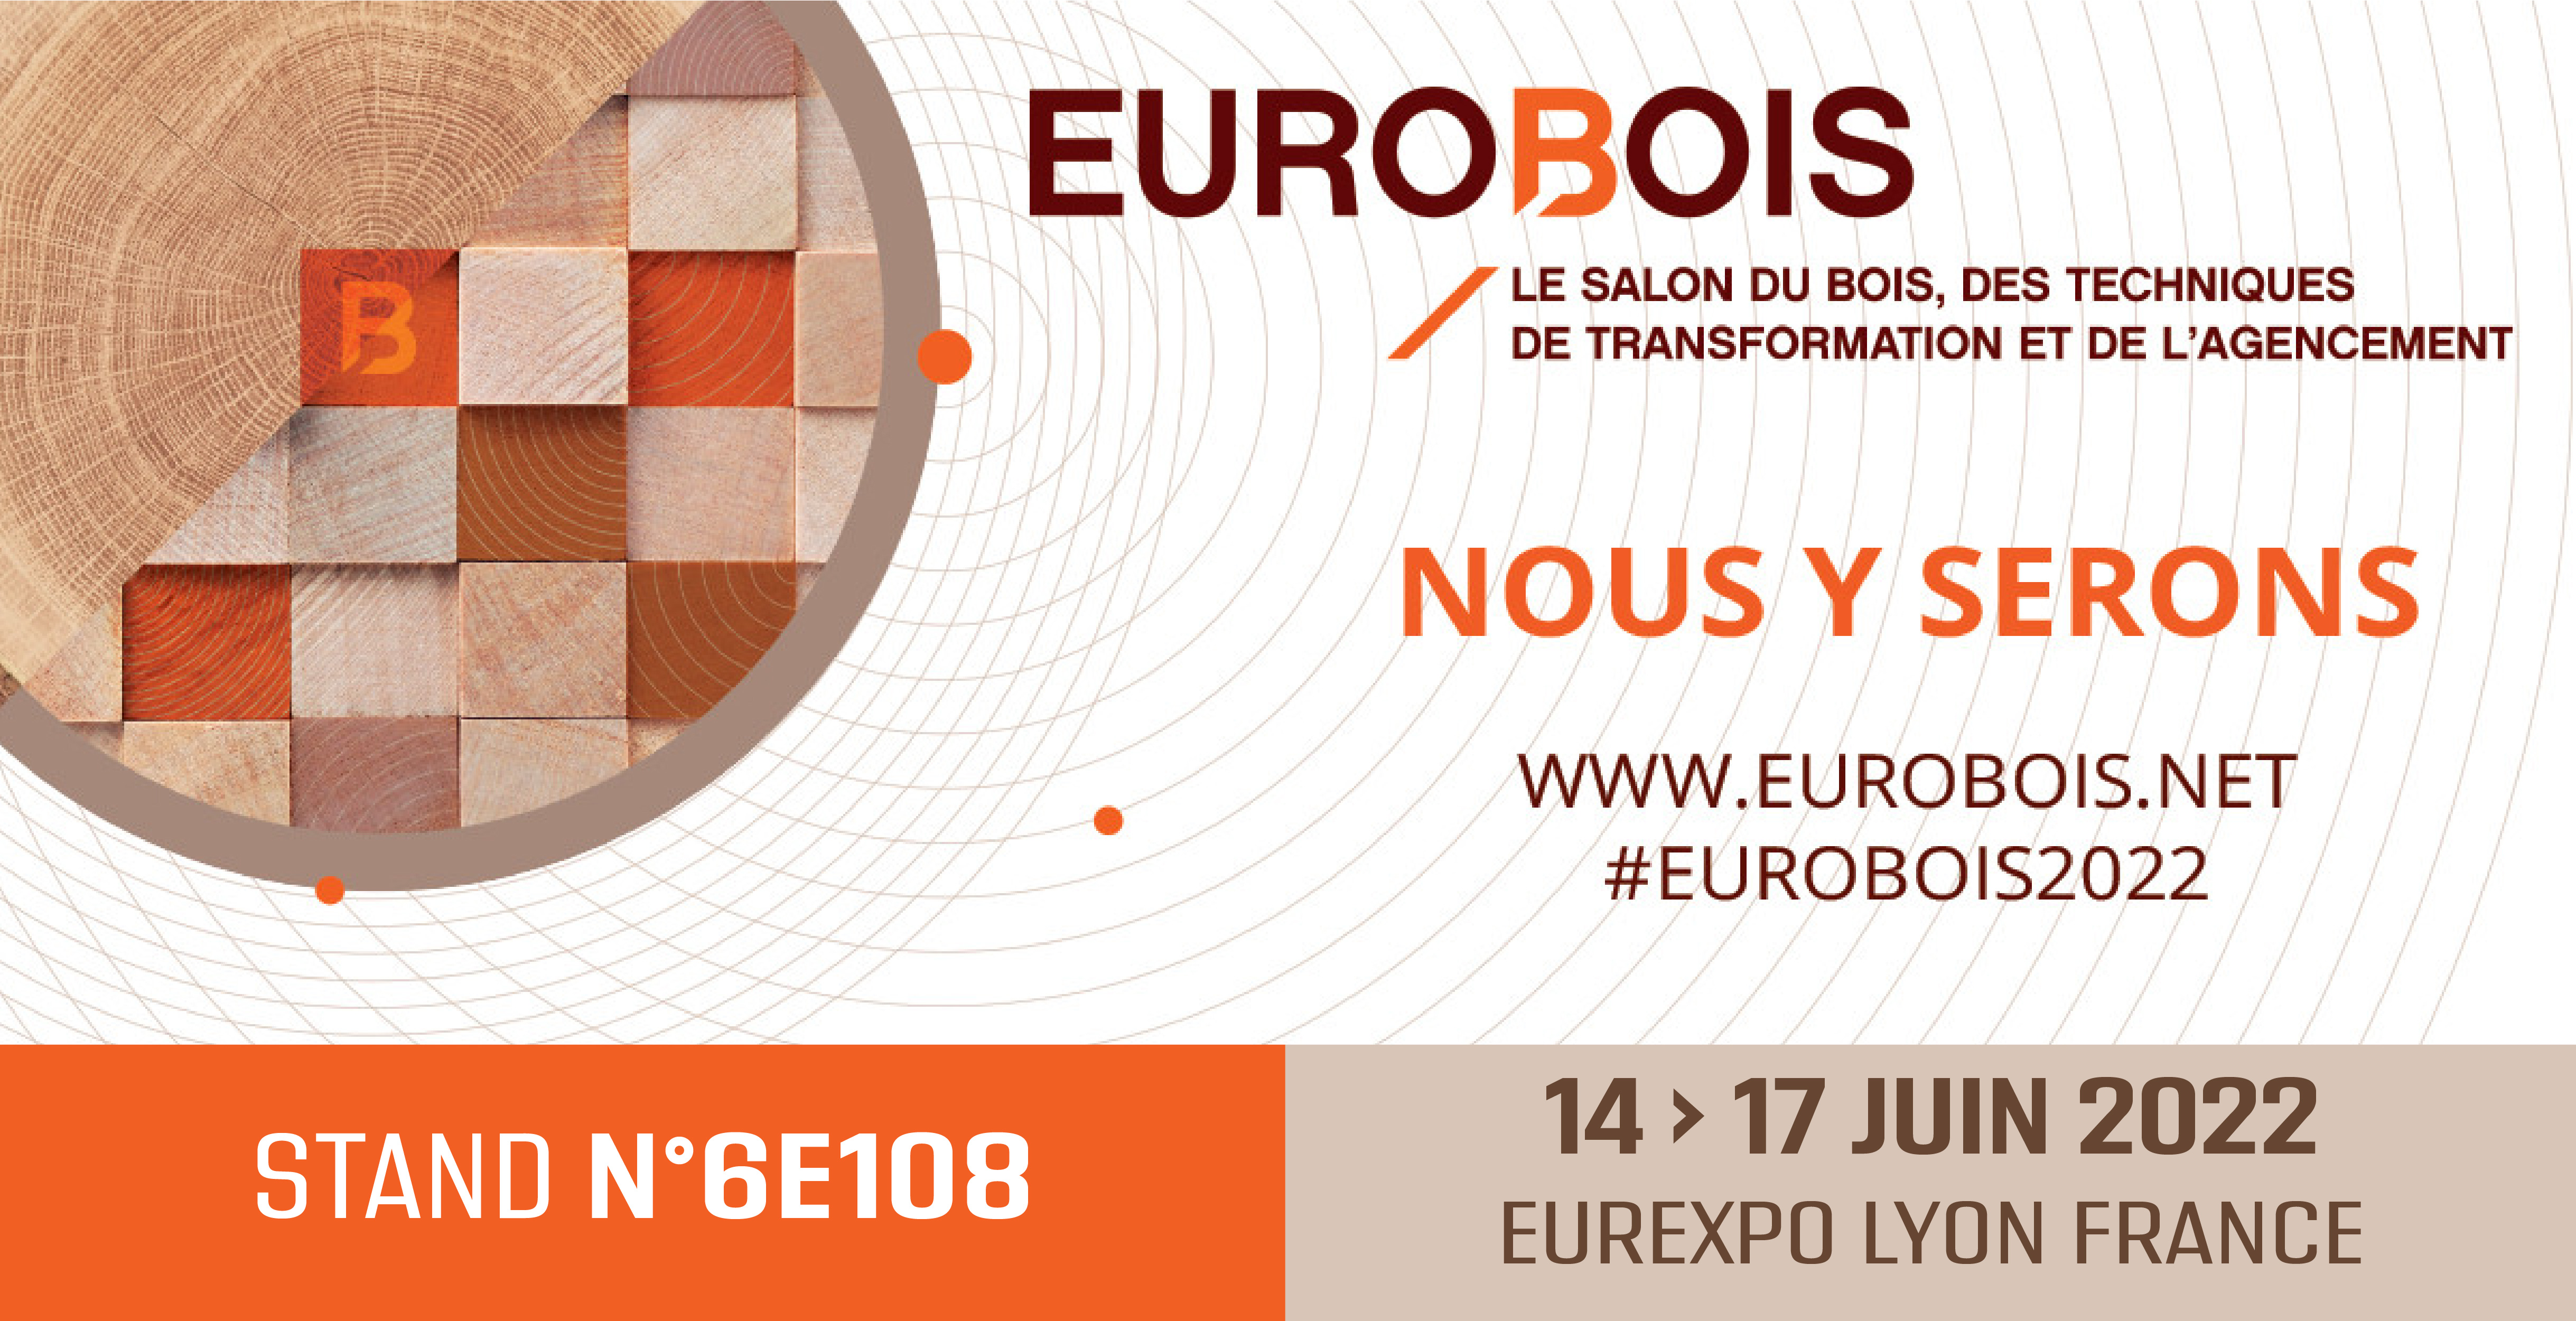 Retrouvez-nous sur notre stand 6E108 au salon EUROBOIS 2022 Lyon Eurexpo !